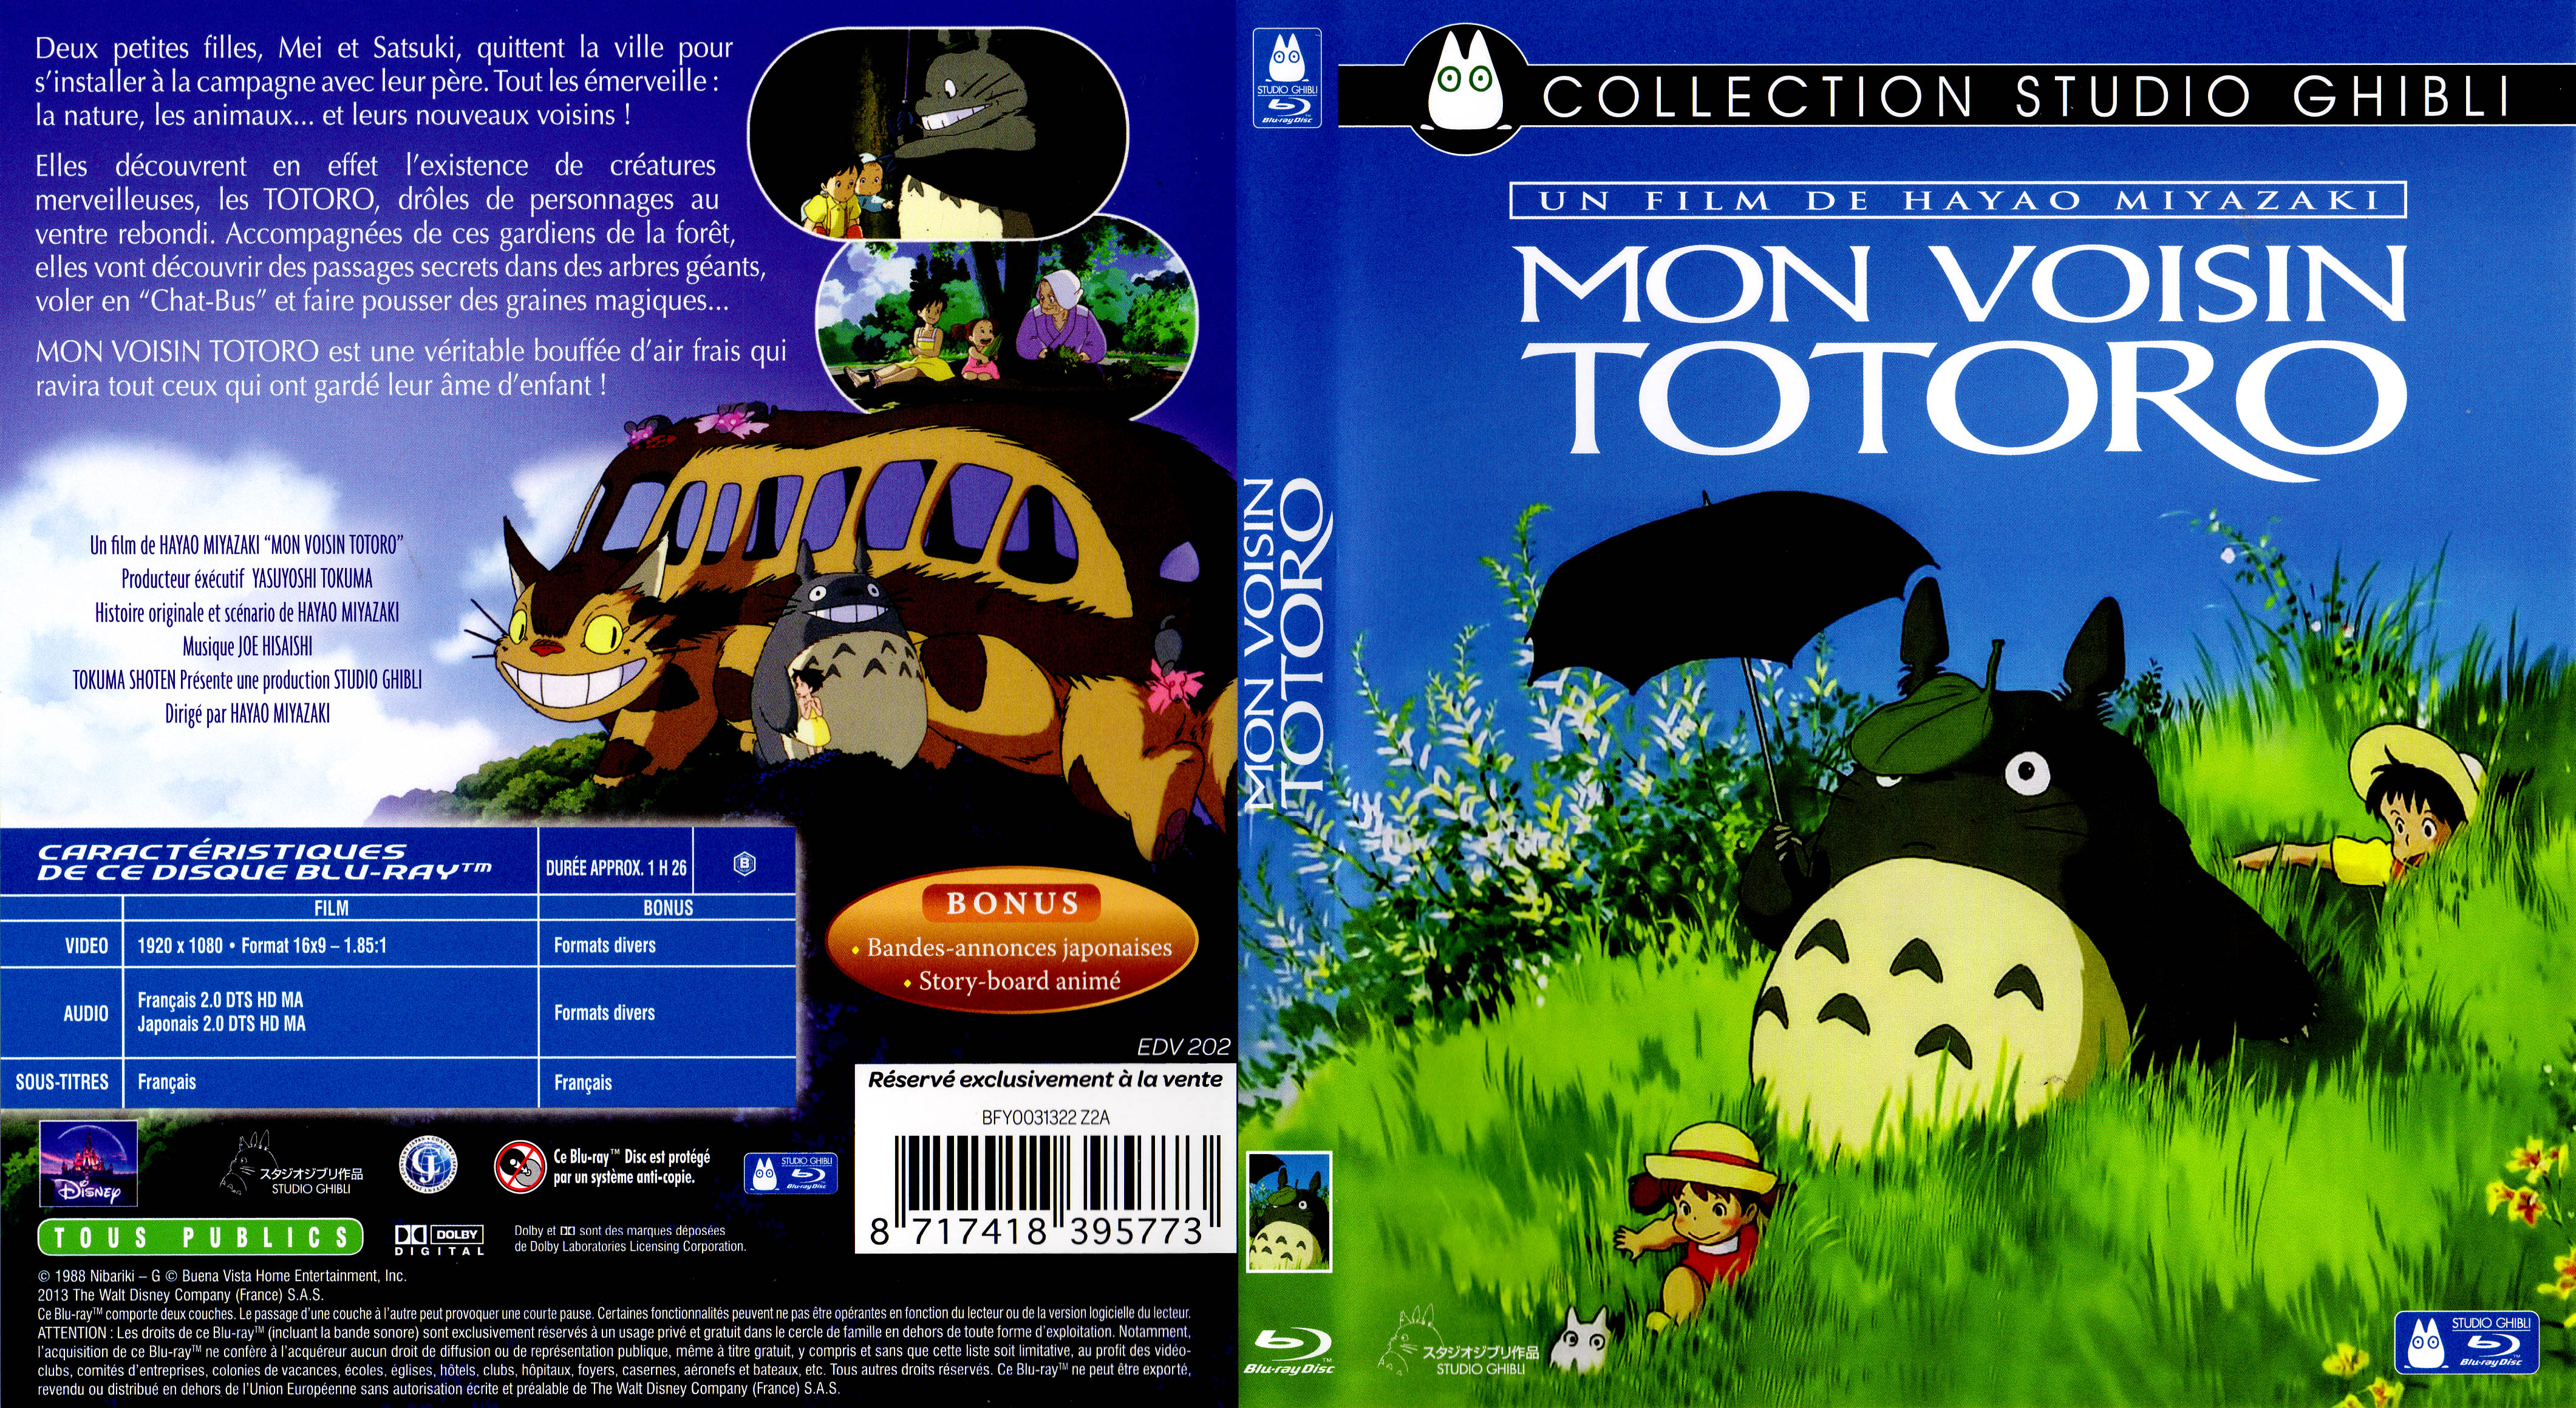 Jaquette DVD de Mon voisin Totoro (BLU-RAY) - Cinéma Passion